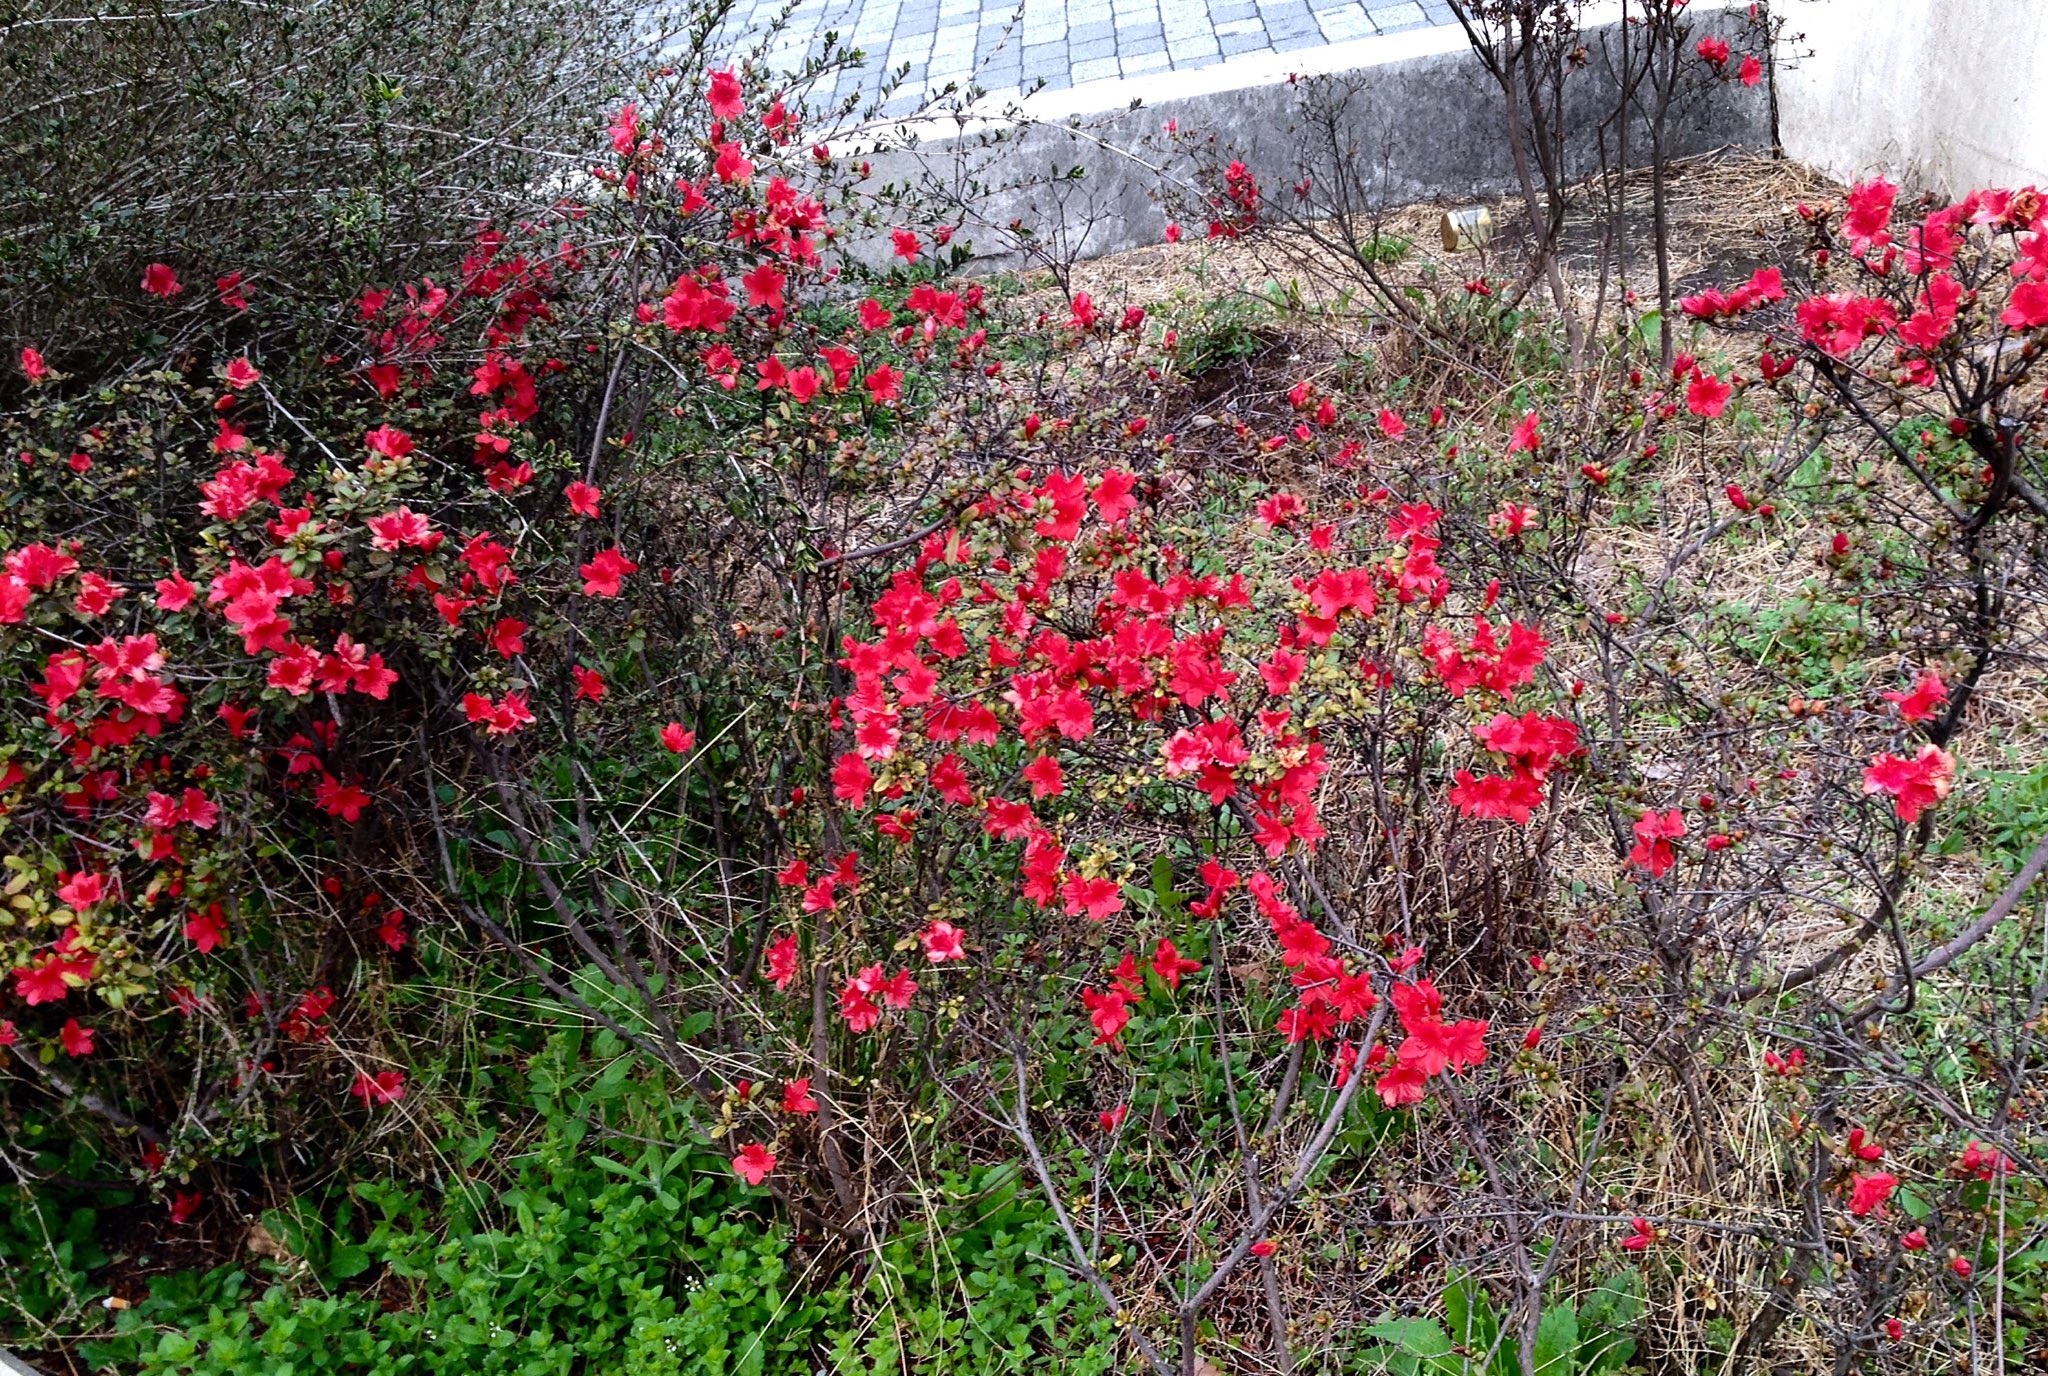 浅見 Lefty Blue おやおや これは早い 新宿駅東口線路近くの植え込みに赤い花 種類はわからないが ツツジ の仲間 かなり花が小さいので いわゆる園芸品種ではない 野山に咲く種類なのではと想像するのだが どうだろう ツツジ 躑躅 Azalea